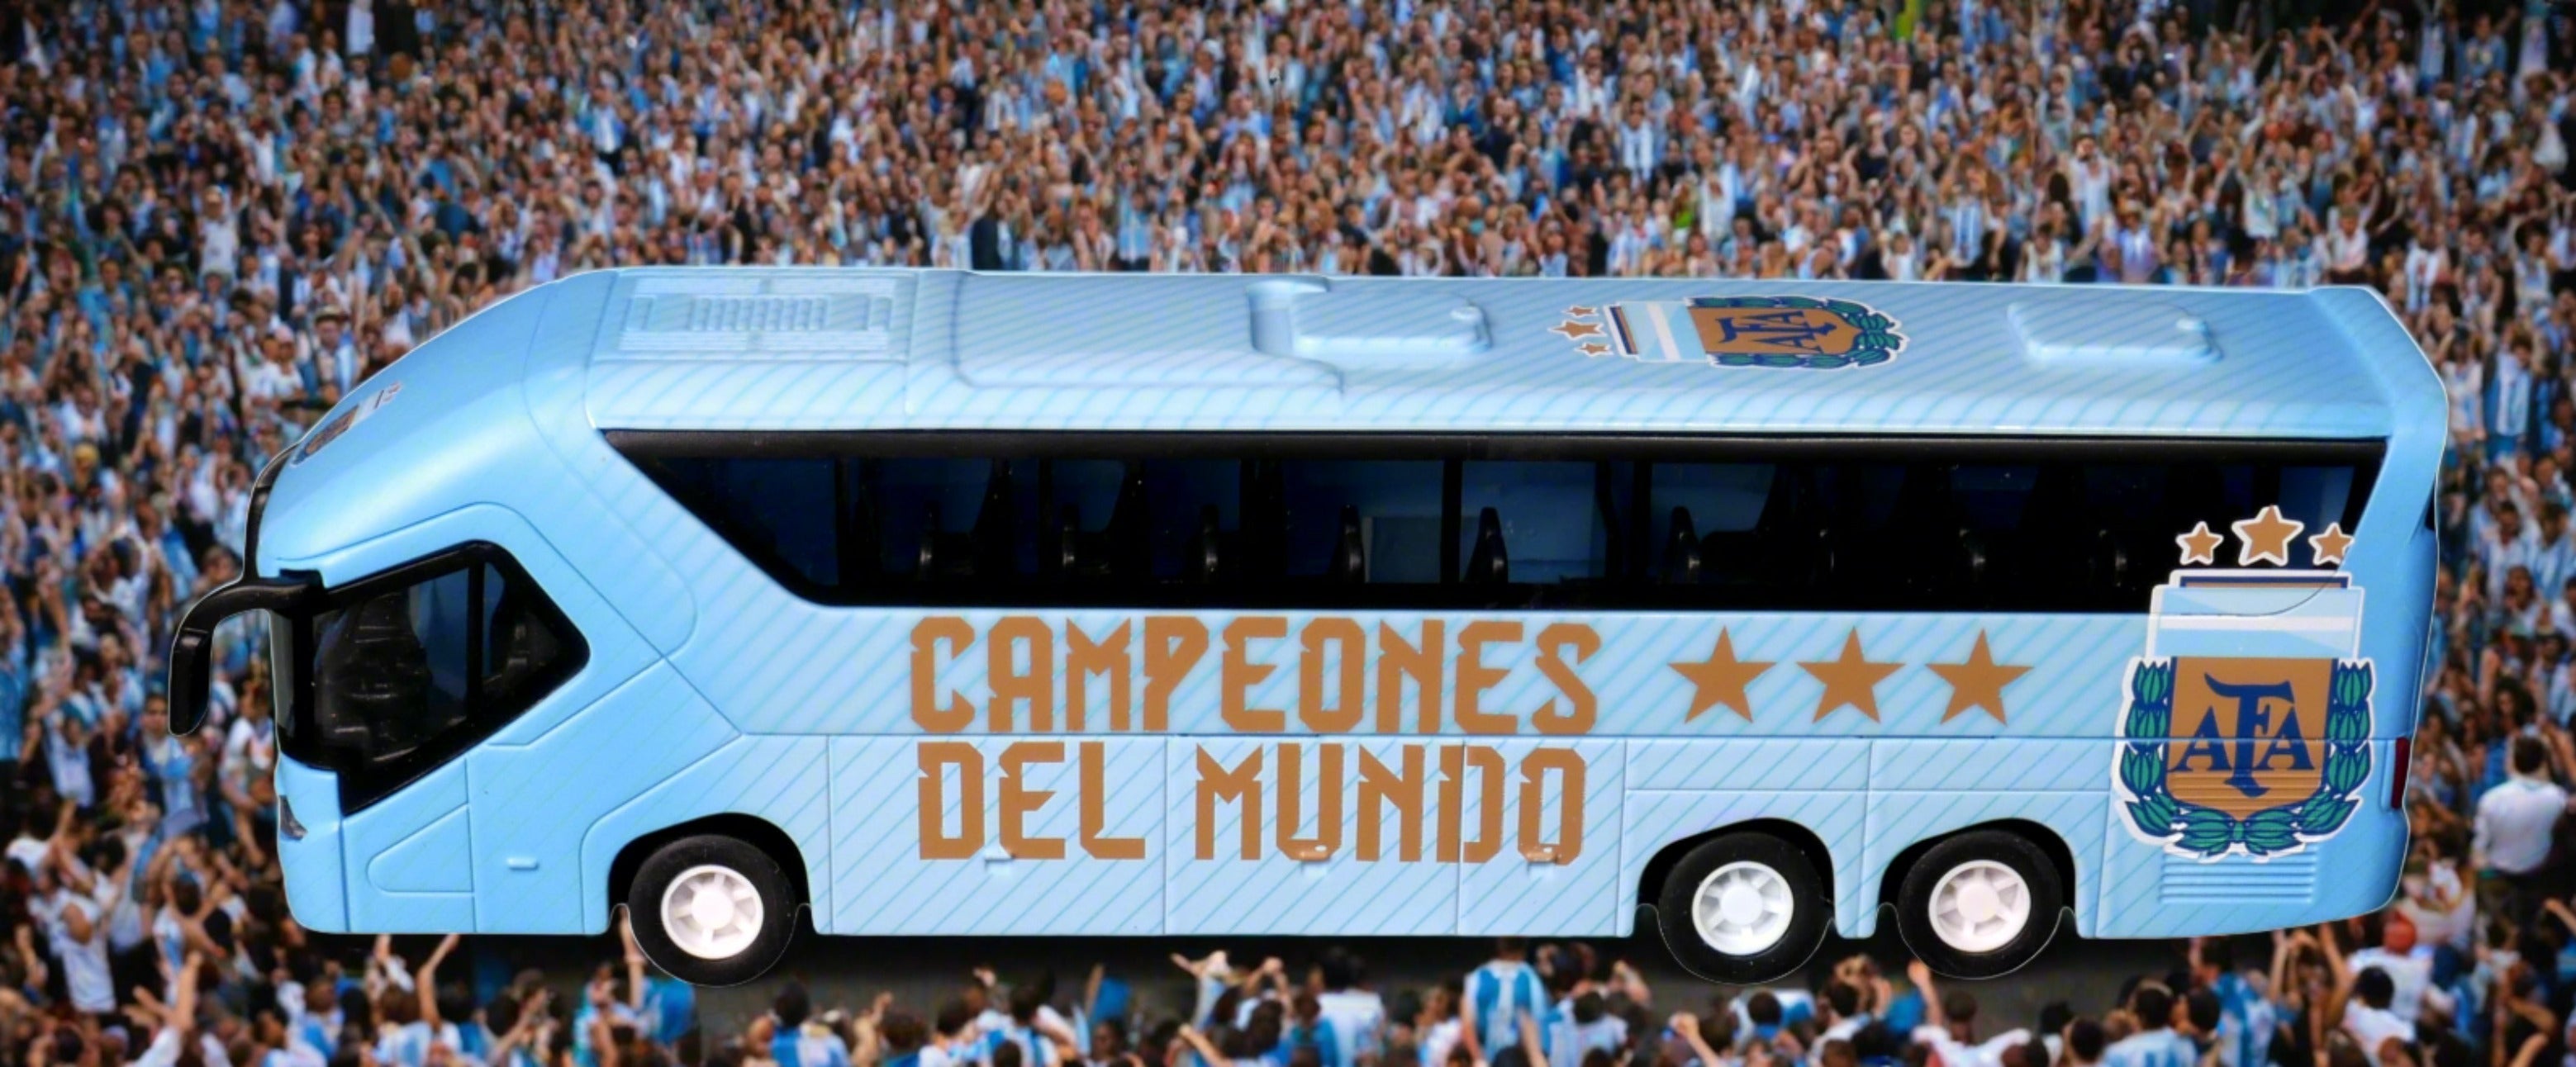 Argentina AFA team bus